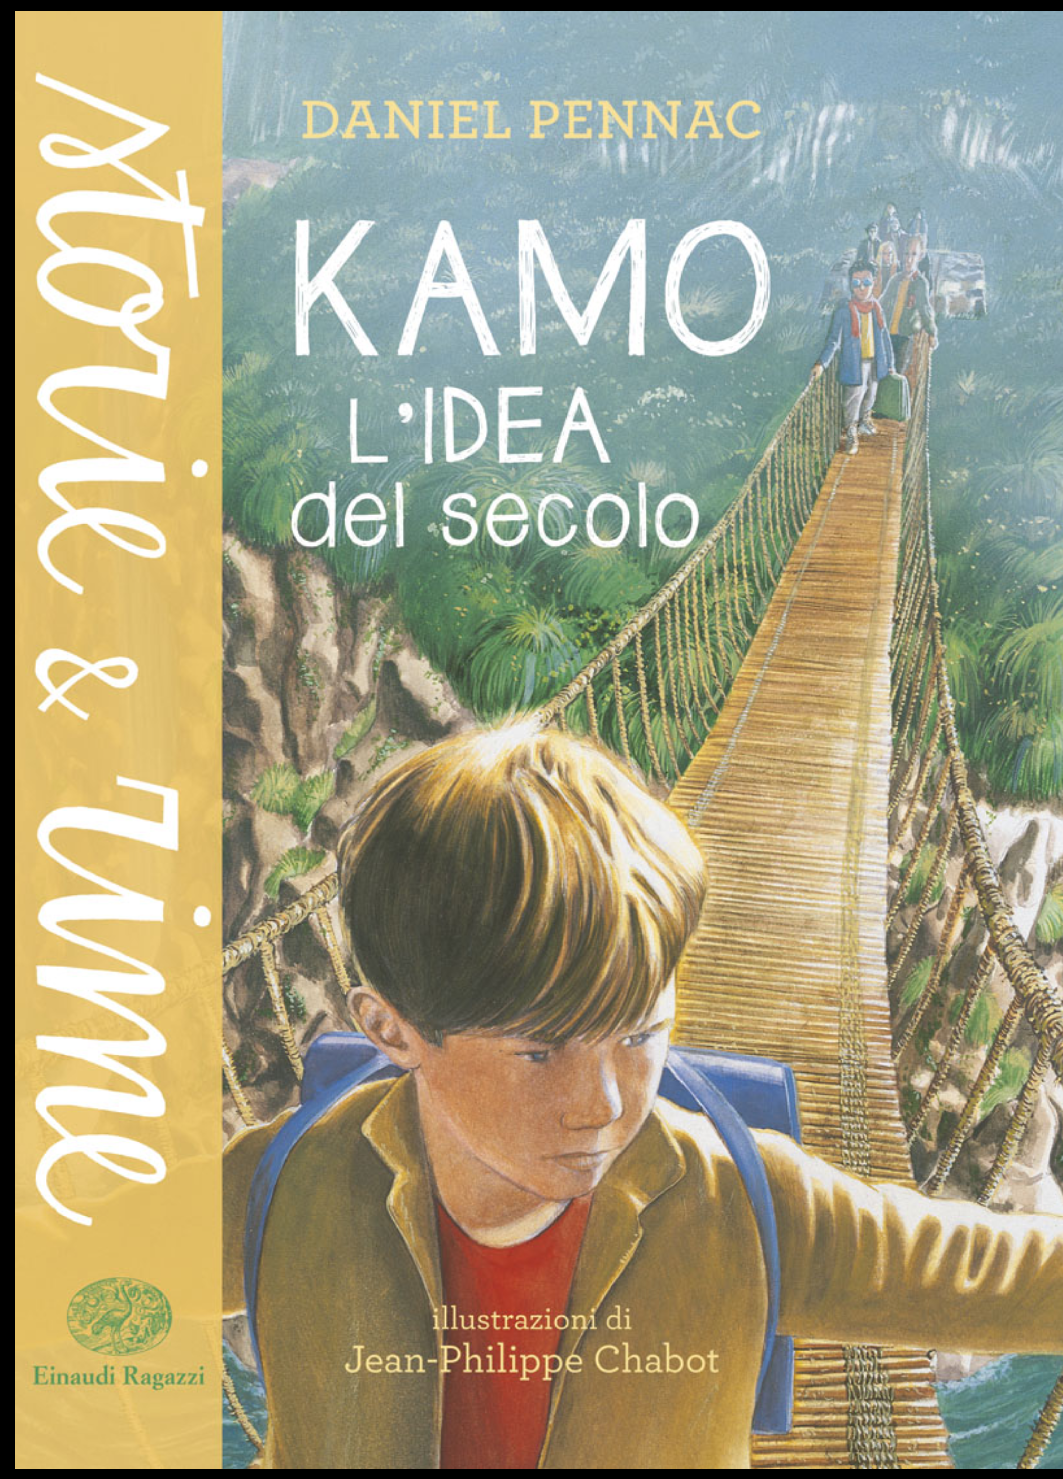 Kamo, l'idea del secolo